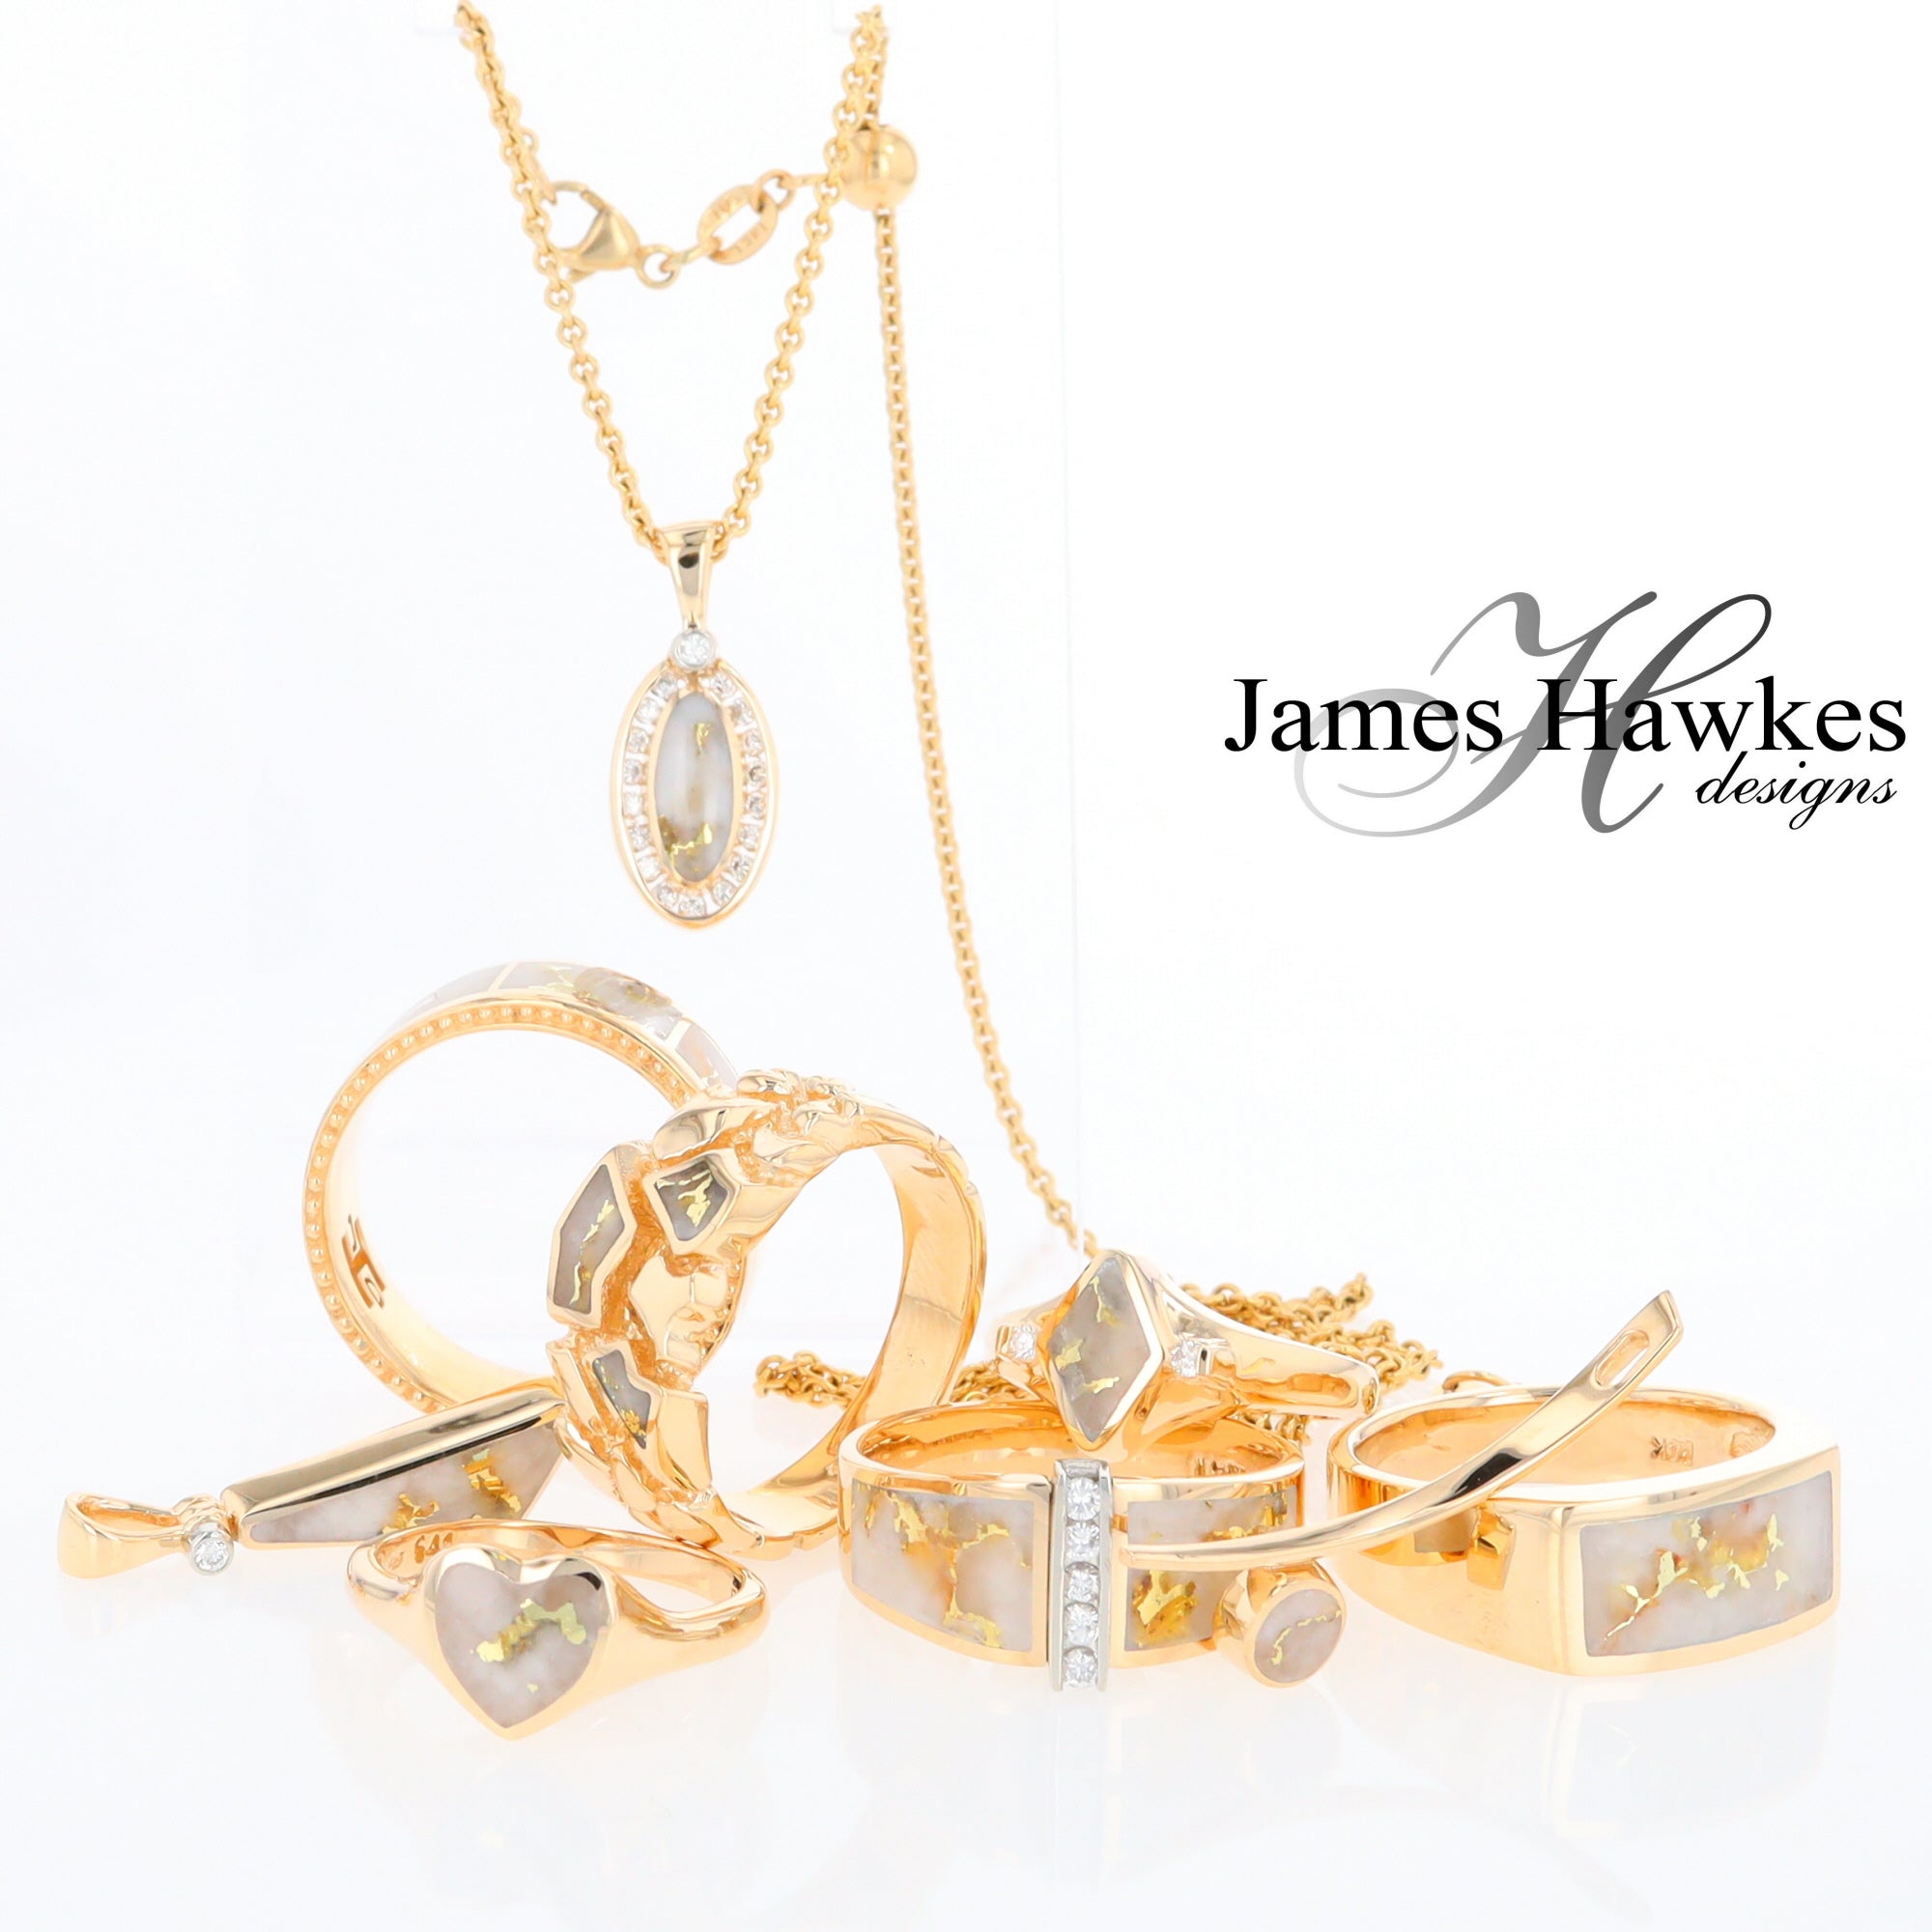 James Hawkes Designs